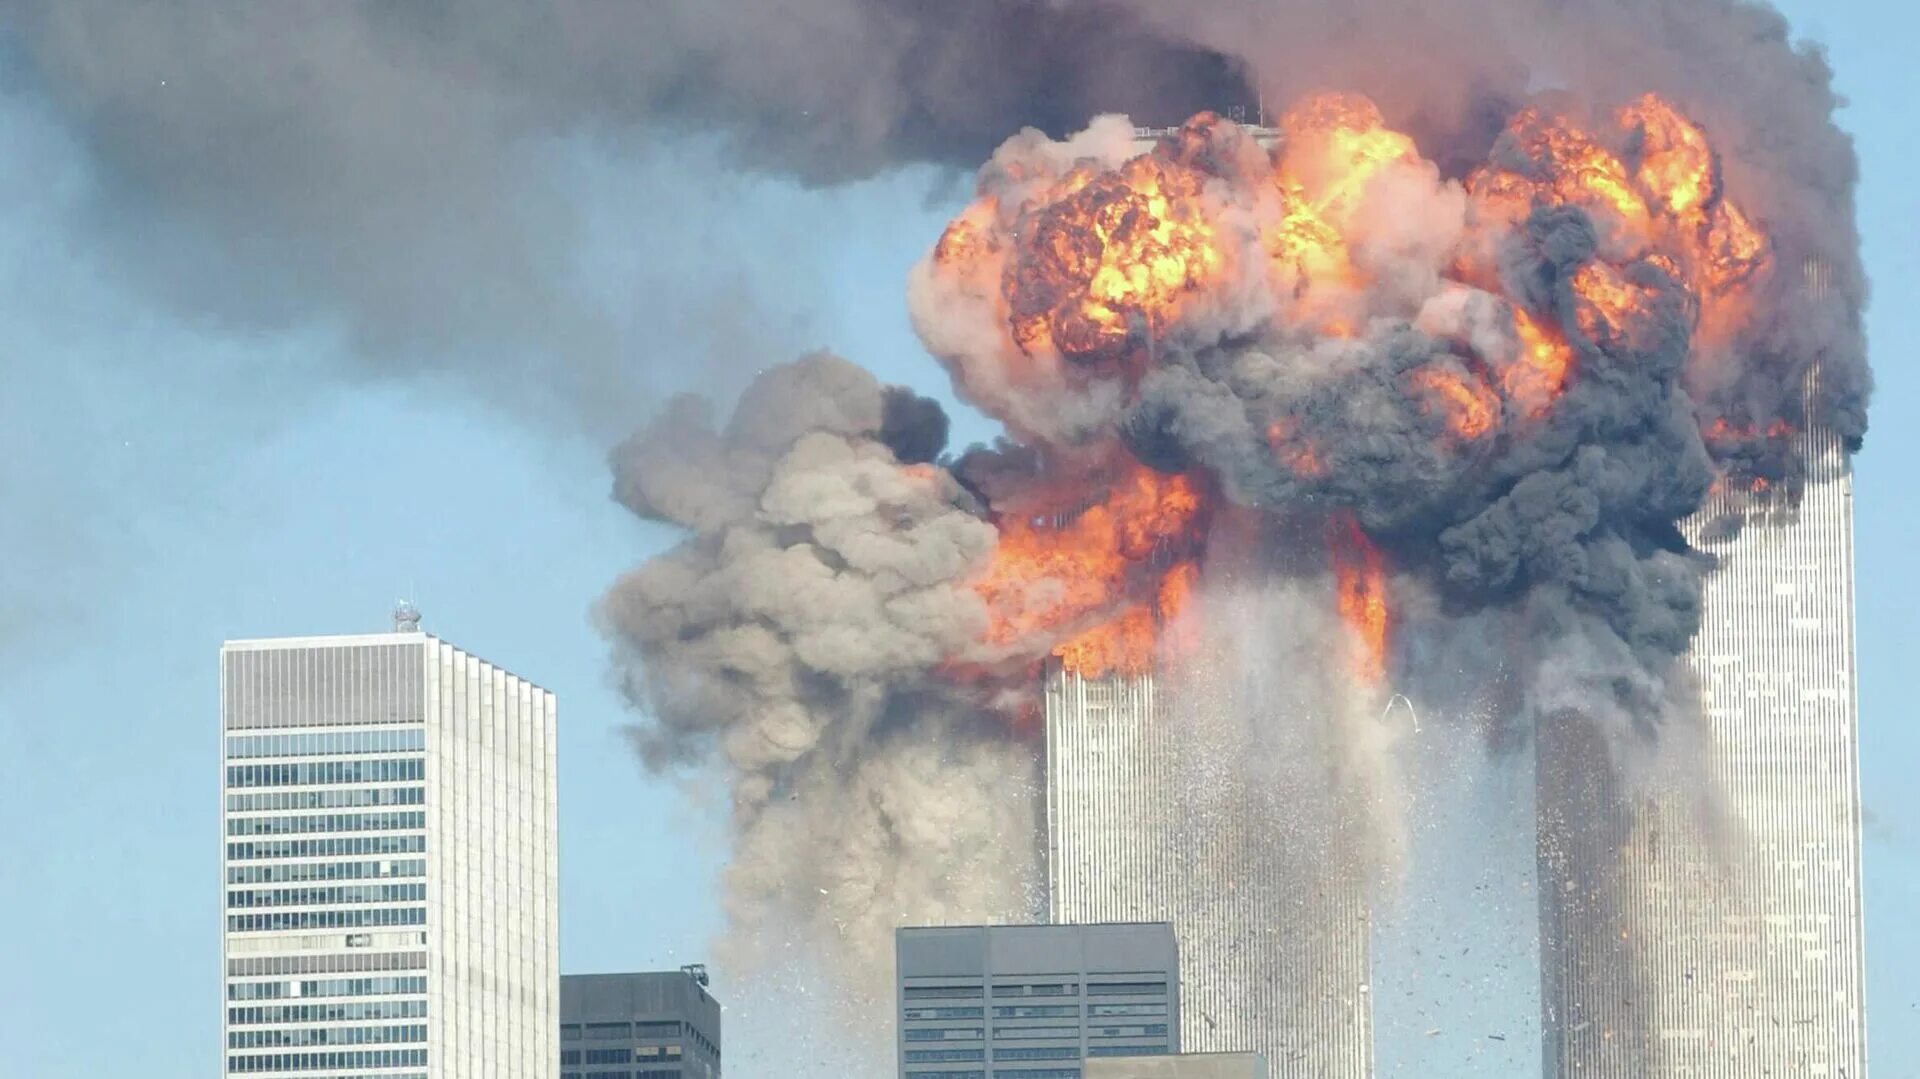 Теракт в 2001 году 11 сентября. Башни Близнецы 11 сентября. Взрыв башен-близнецов в Нью-Йорке 11 сентября. Аль Каида теракт 11 сентября.